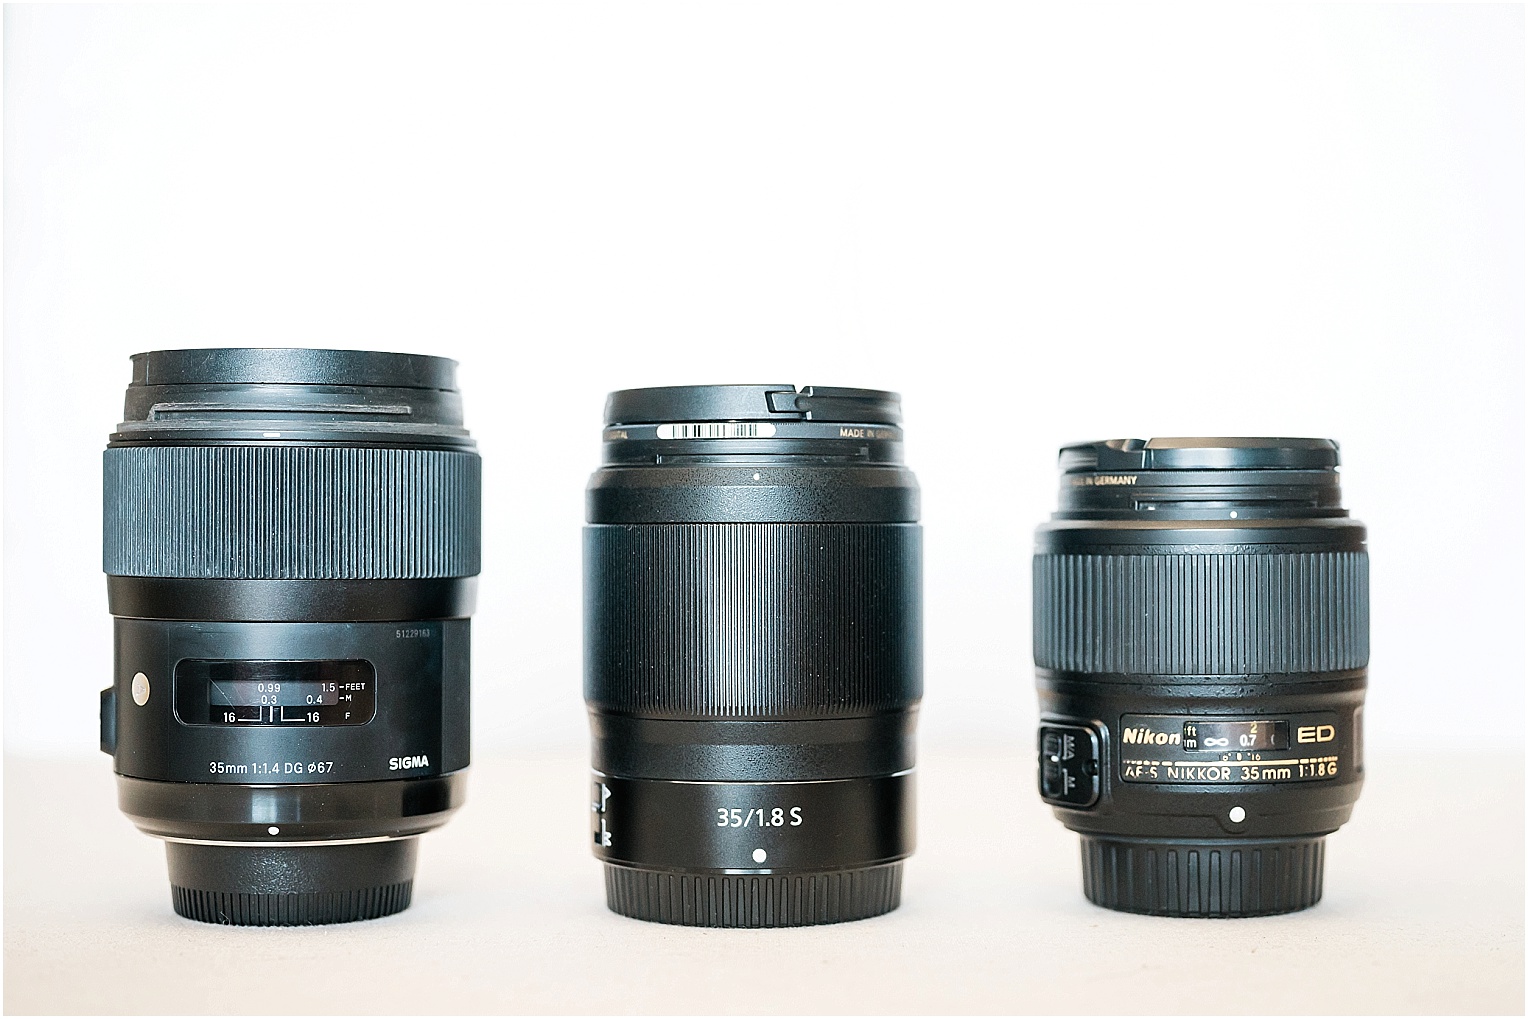 Nikon 35 mm f1.8G vs Sigma 35 mm 1.4 ART size comparison